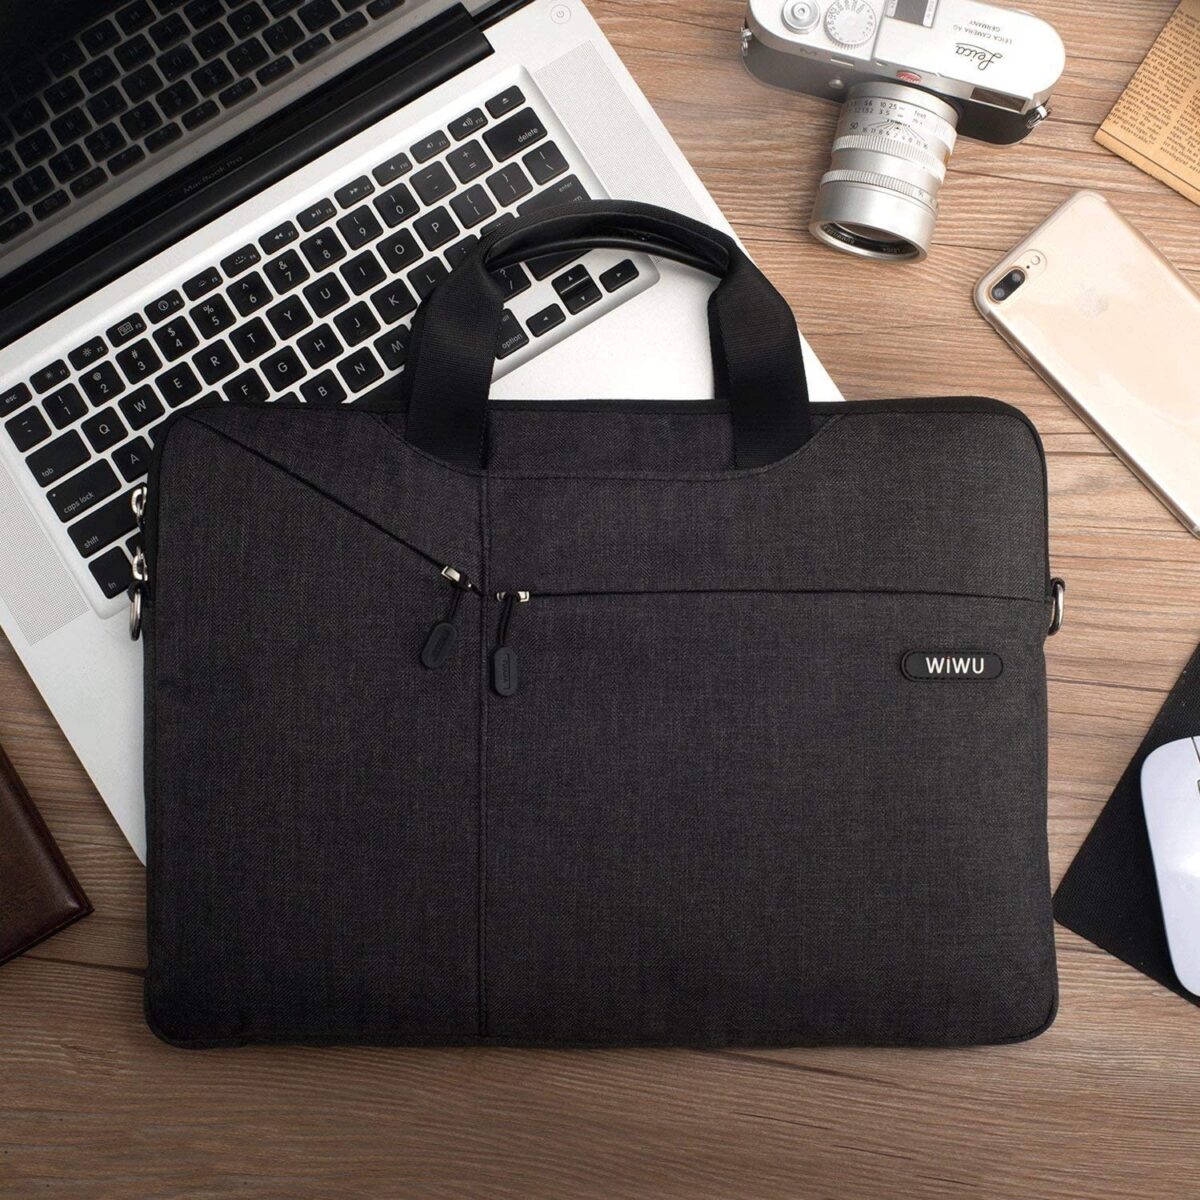 WIWU 13.3 Inch Laptop Sleeve Case Messenger Shoulder Bag